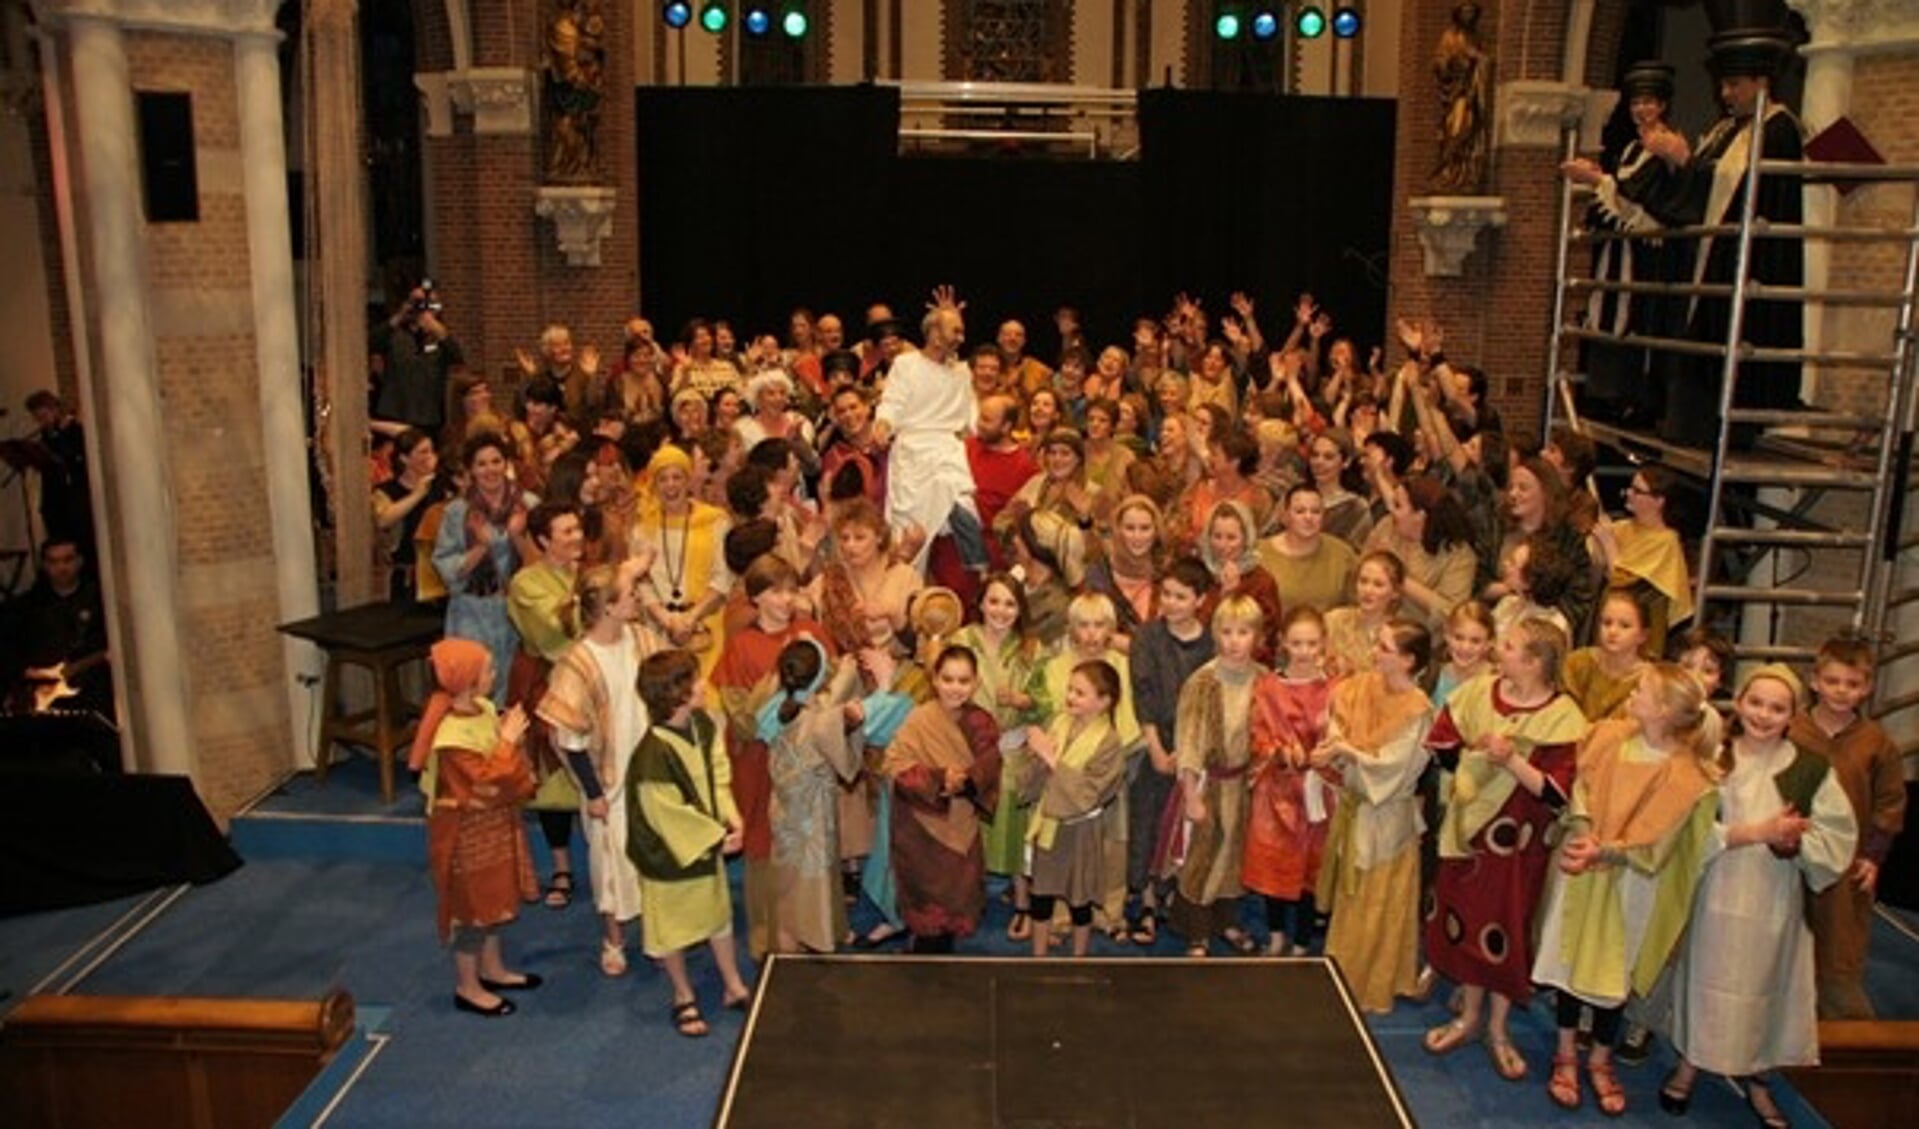 De cast van Jesus Christ Superstar in 2010 in de Bartholomeuskerk. | Foto: pr.